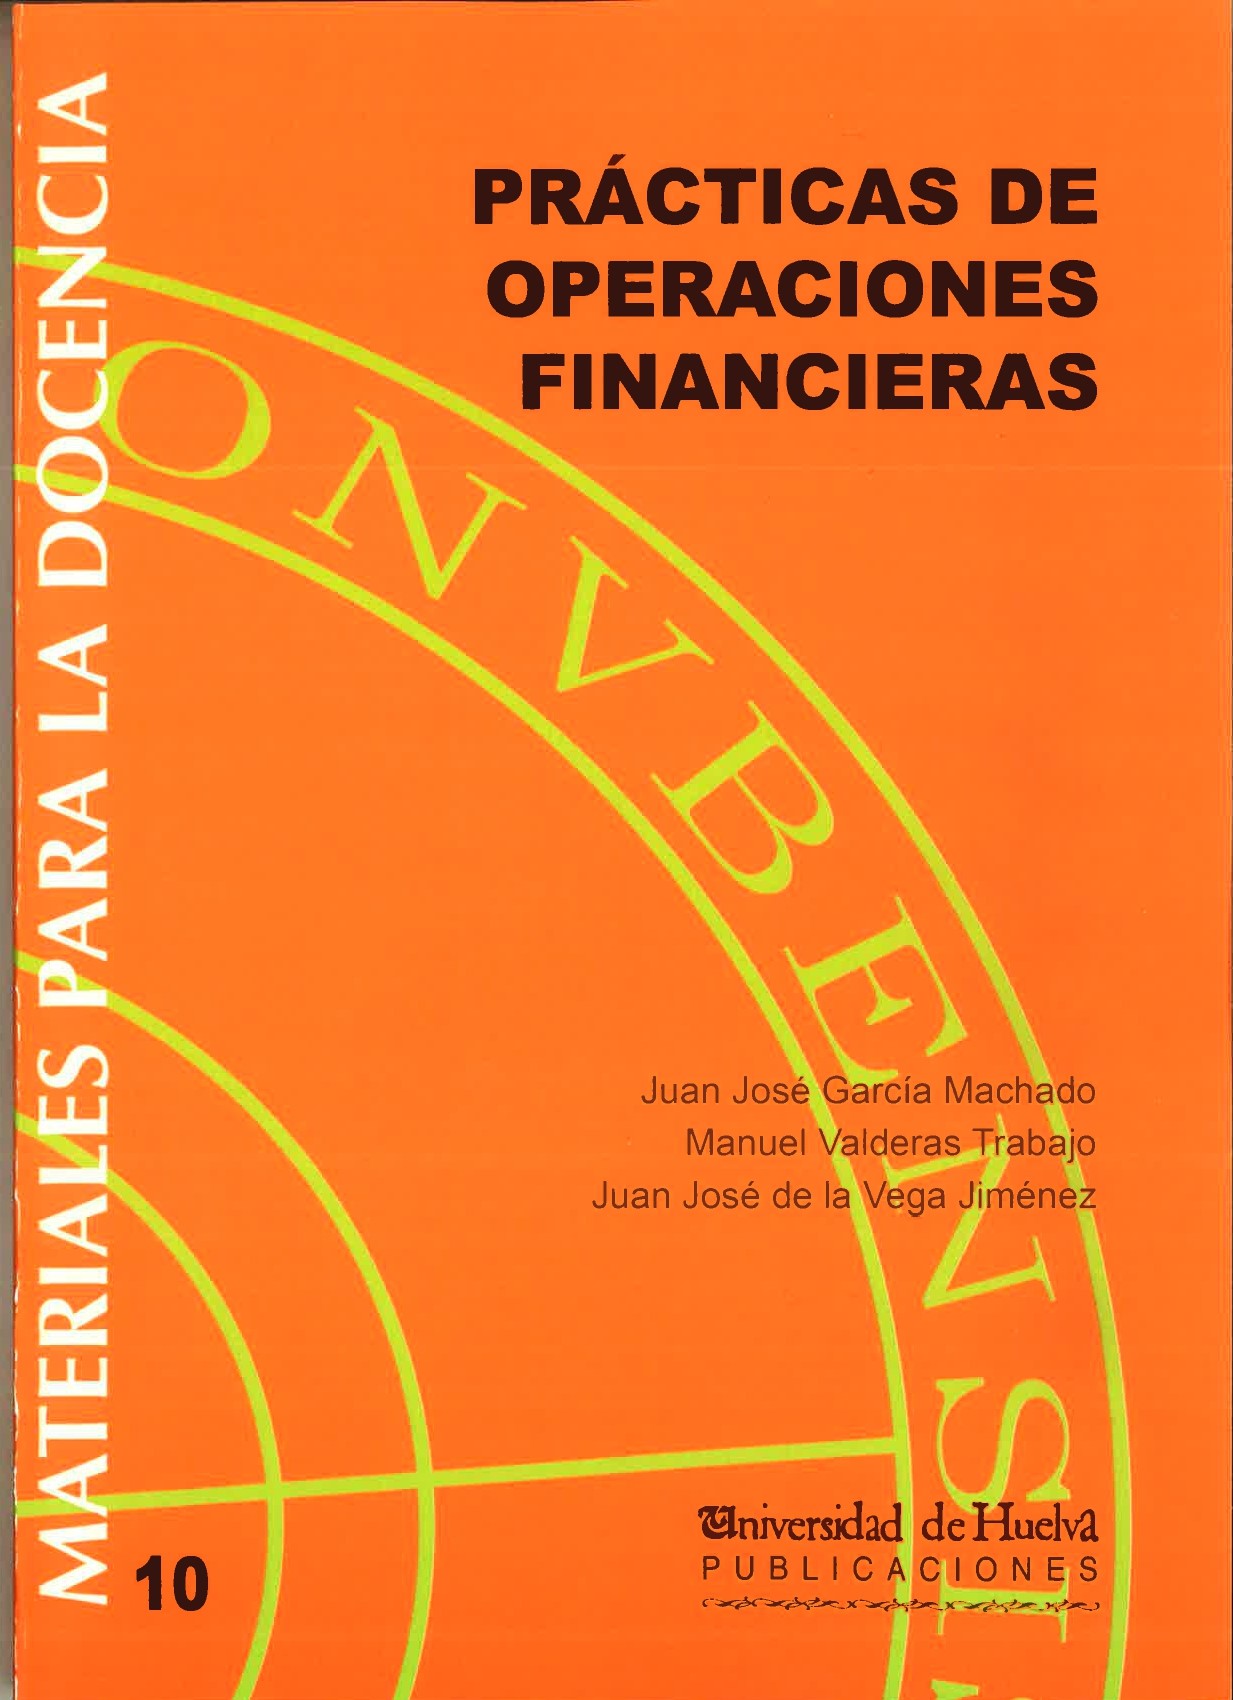 Imagen de portada del libro Prácticas de operaciones financieras